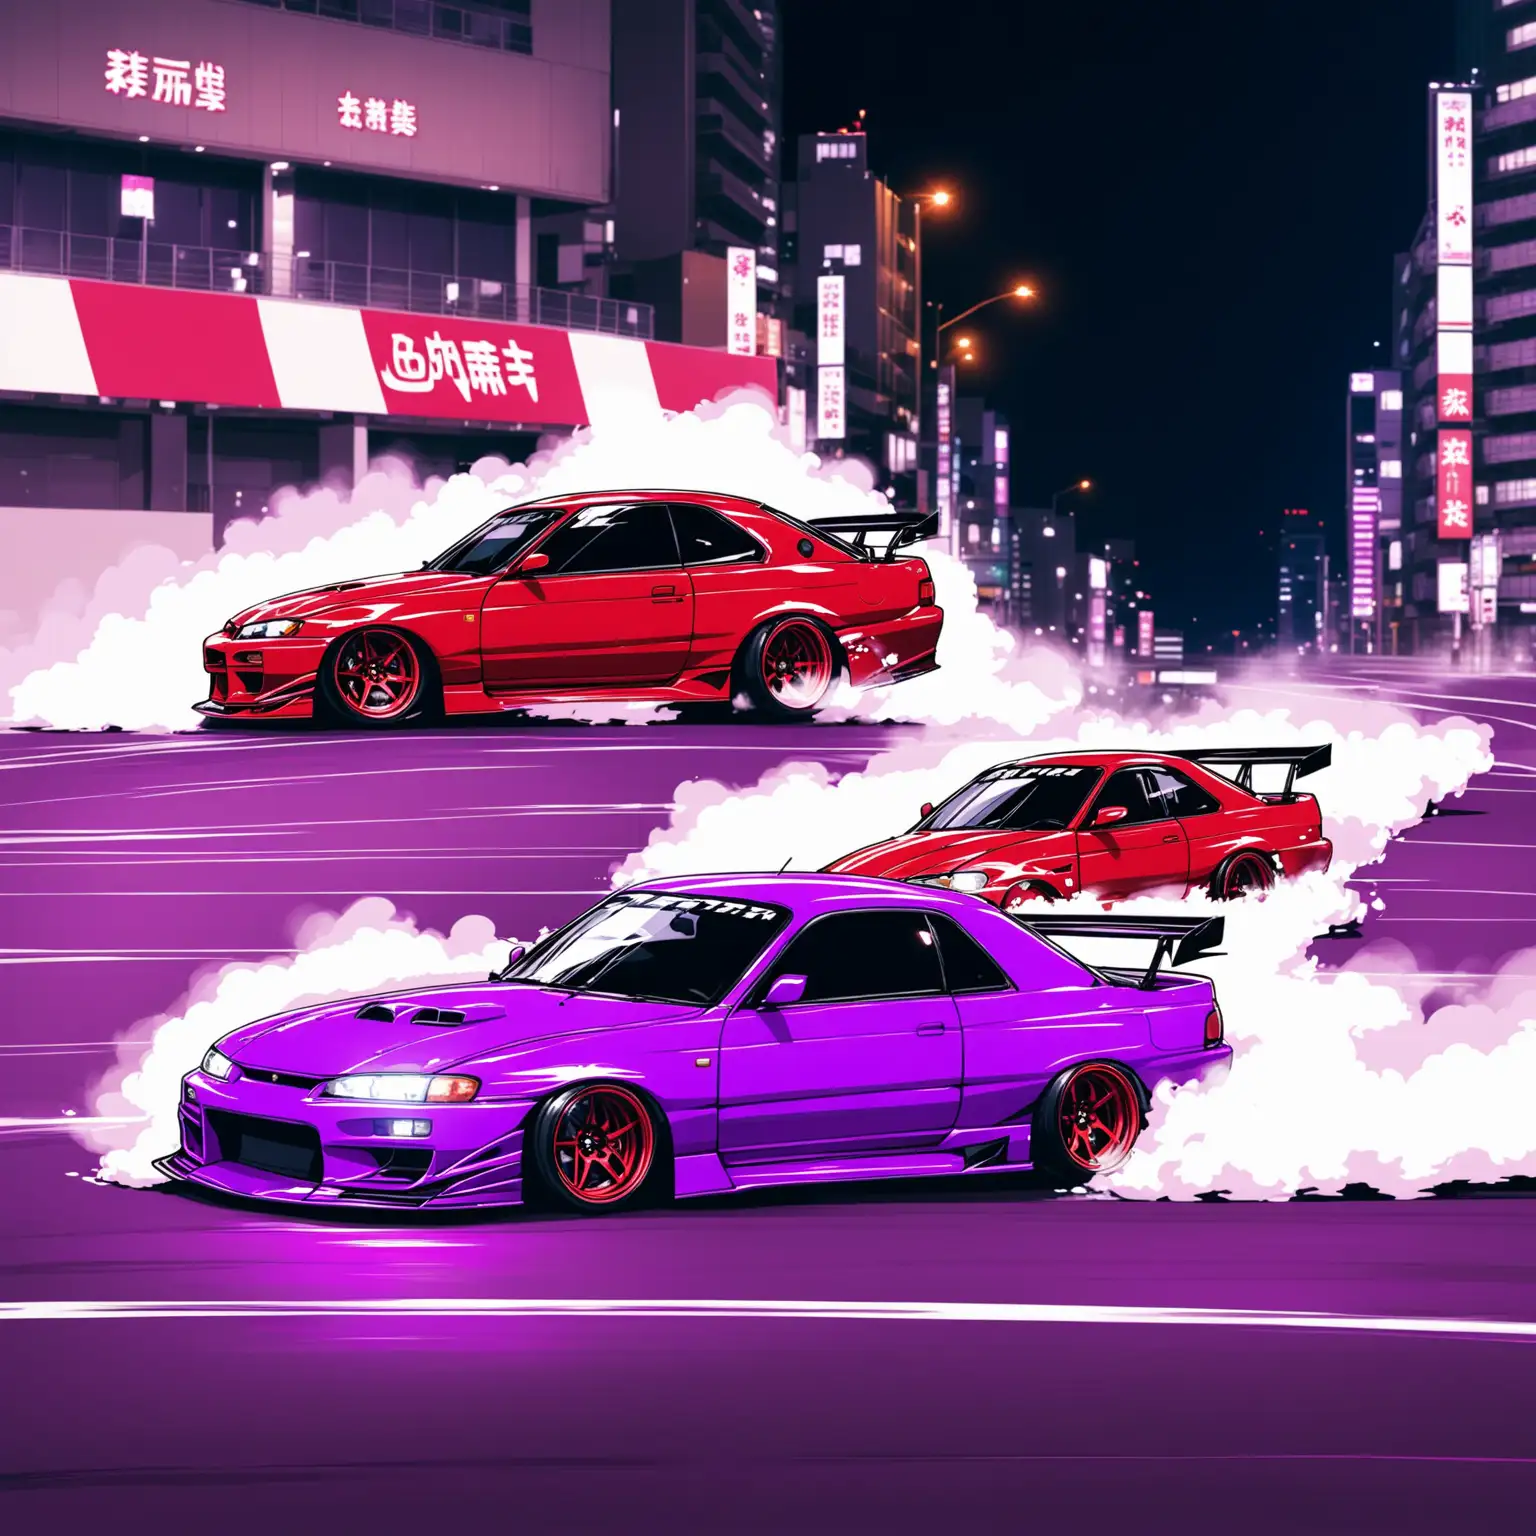 Япония машина дрифт фиолетовый и красный, в городе
